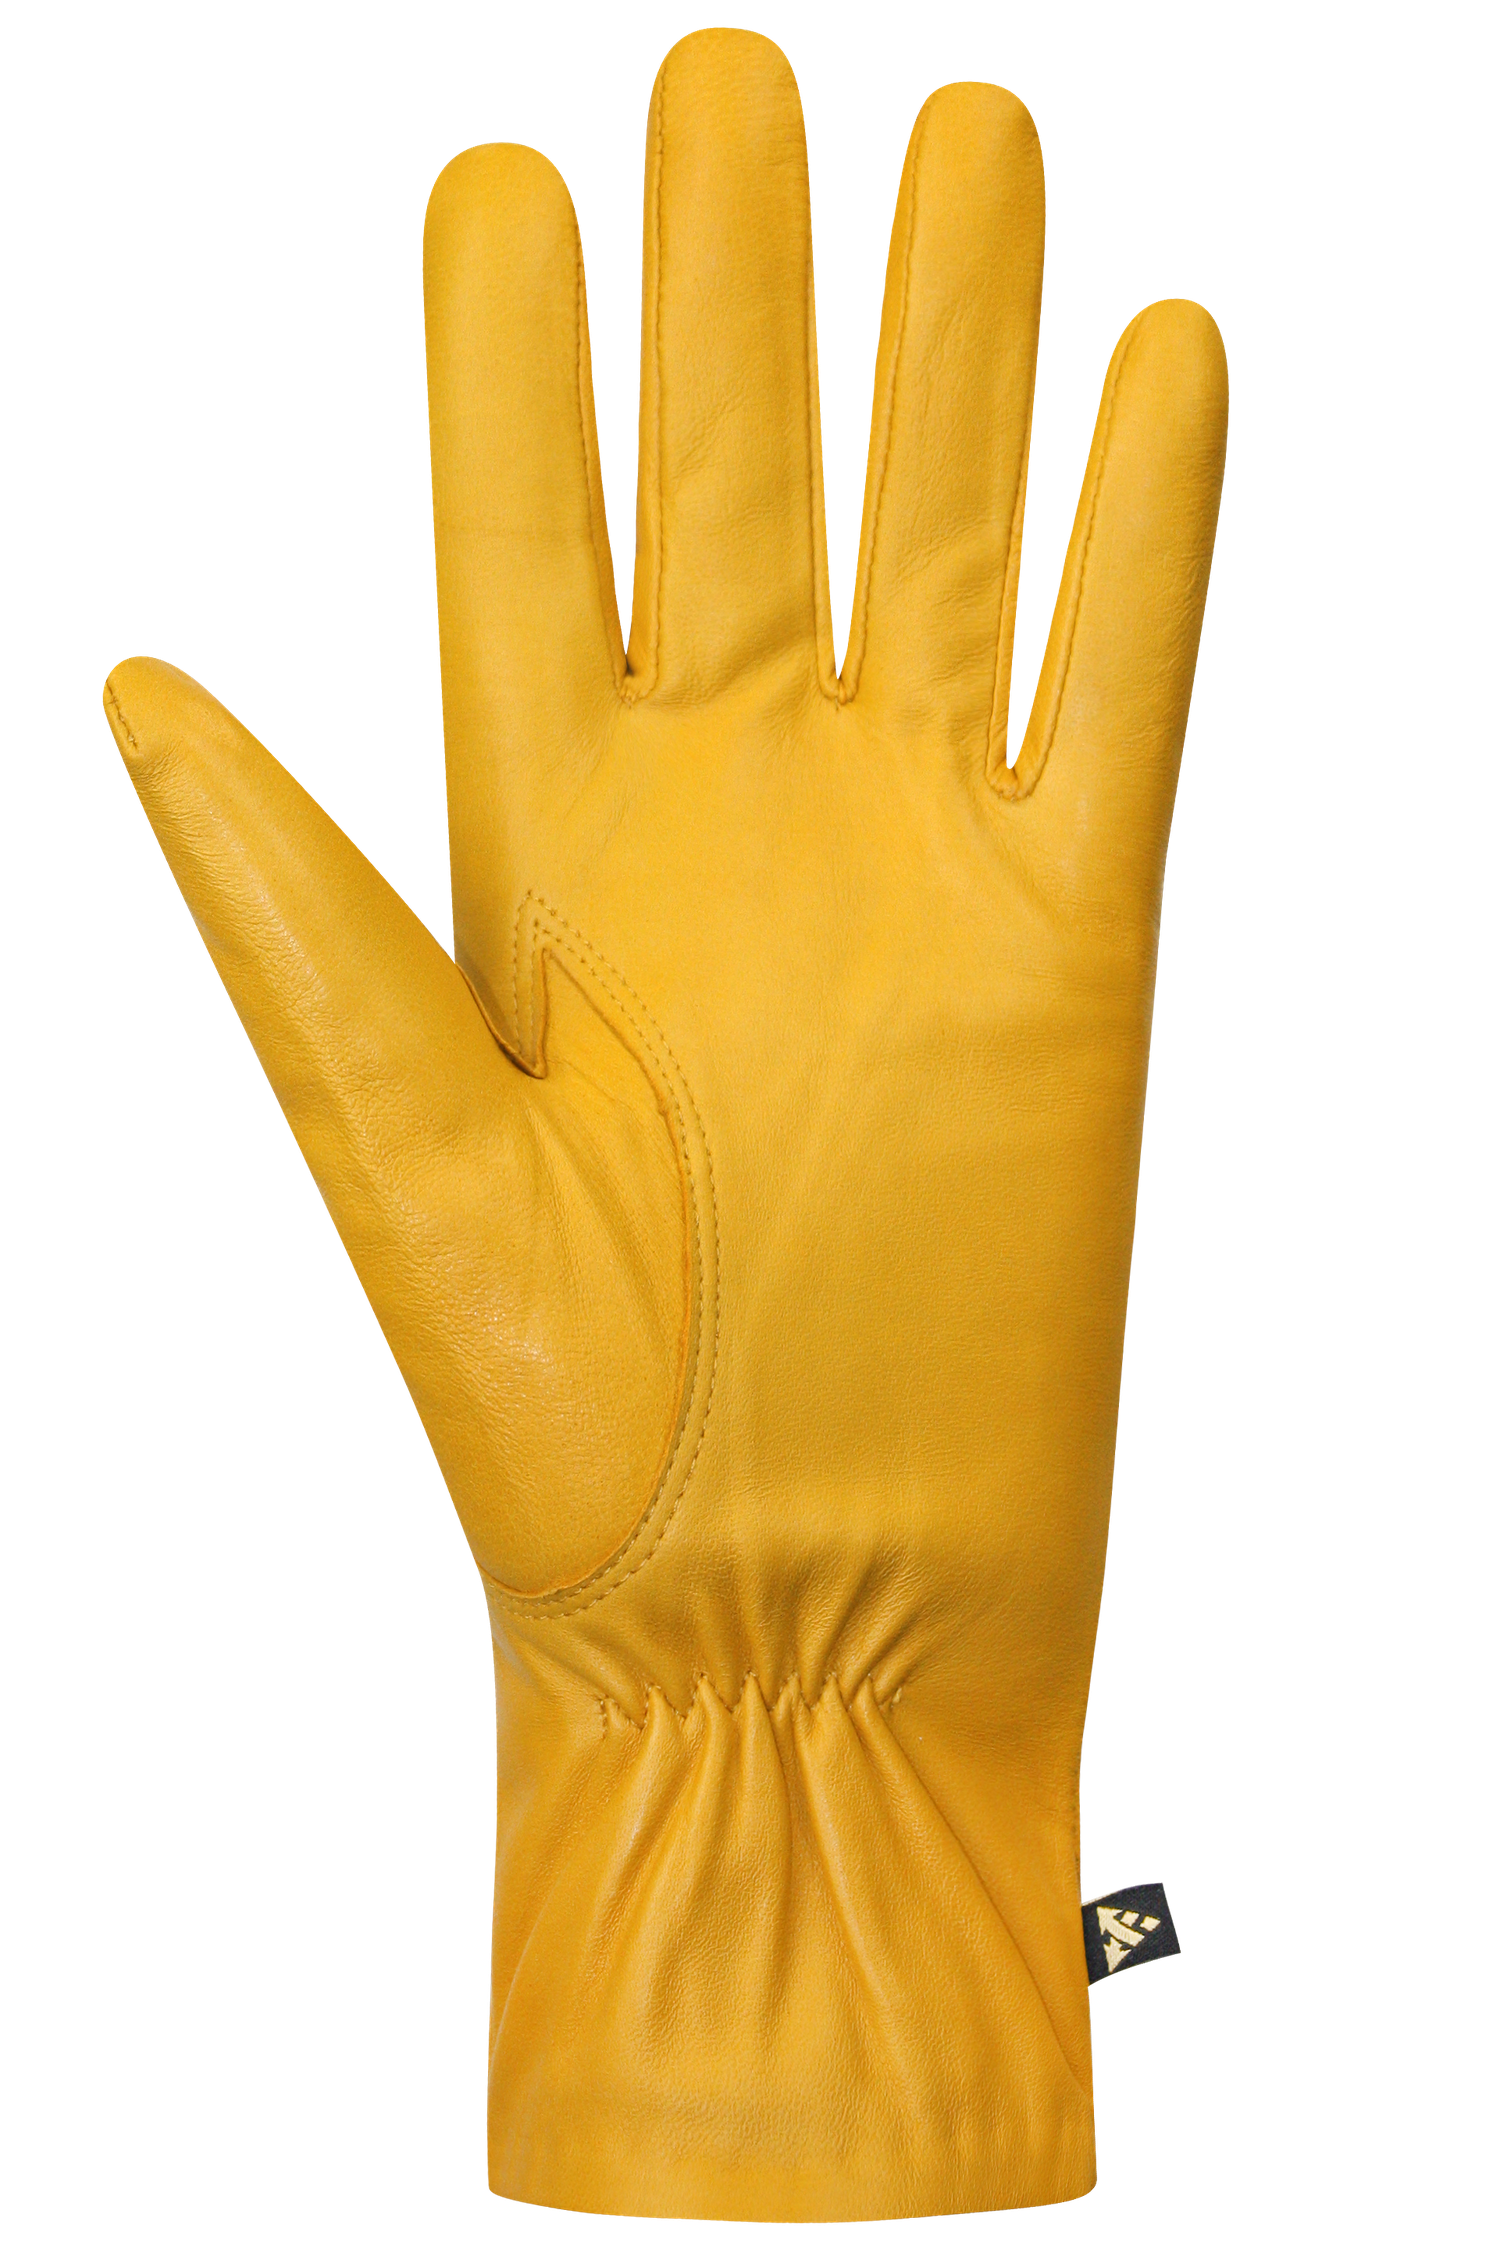 Clementine Gloves - Women, Yellow